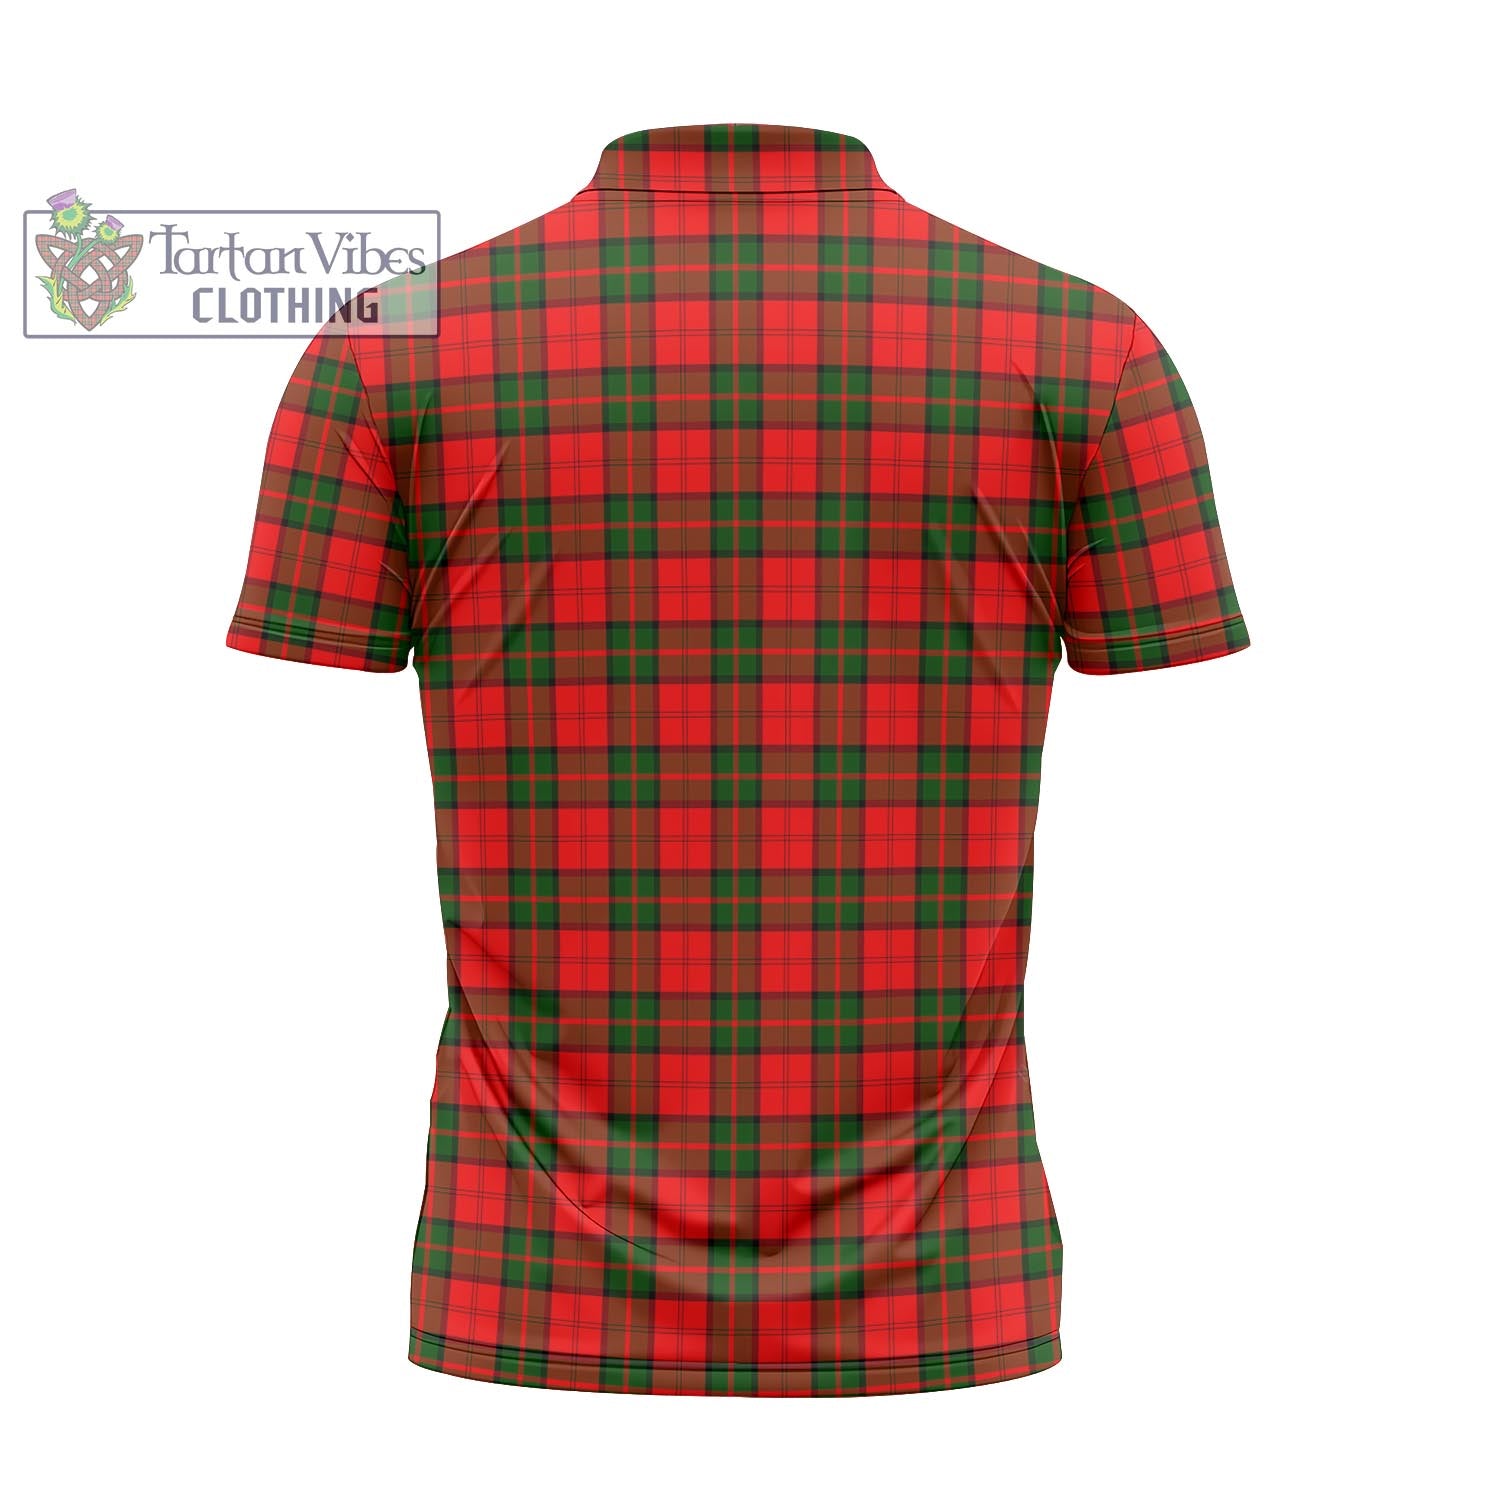 Tartan Vibes Clothing Dunbar Modern Tartan Zipper Polo Shirt with Family Crest